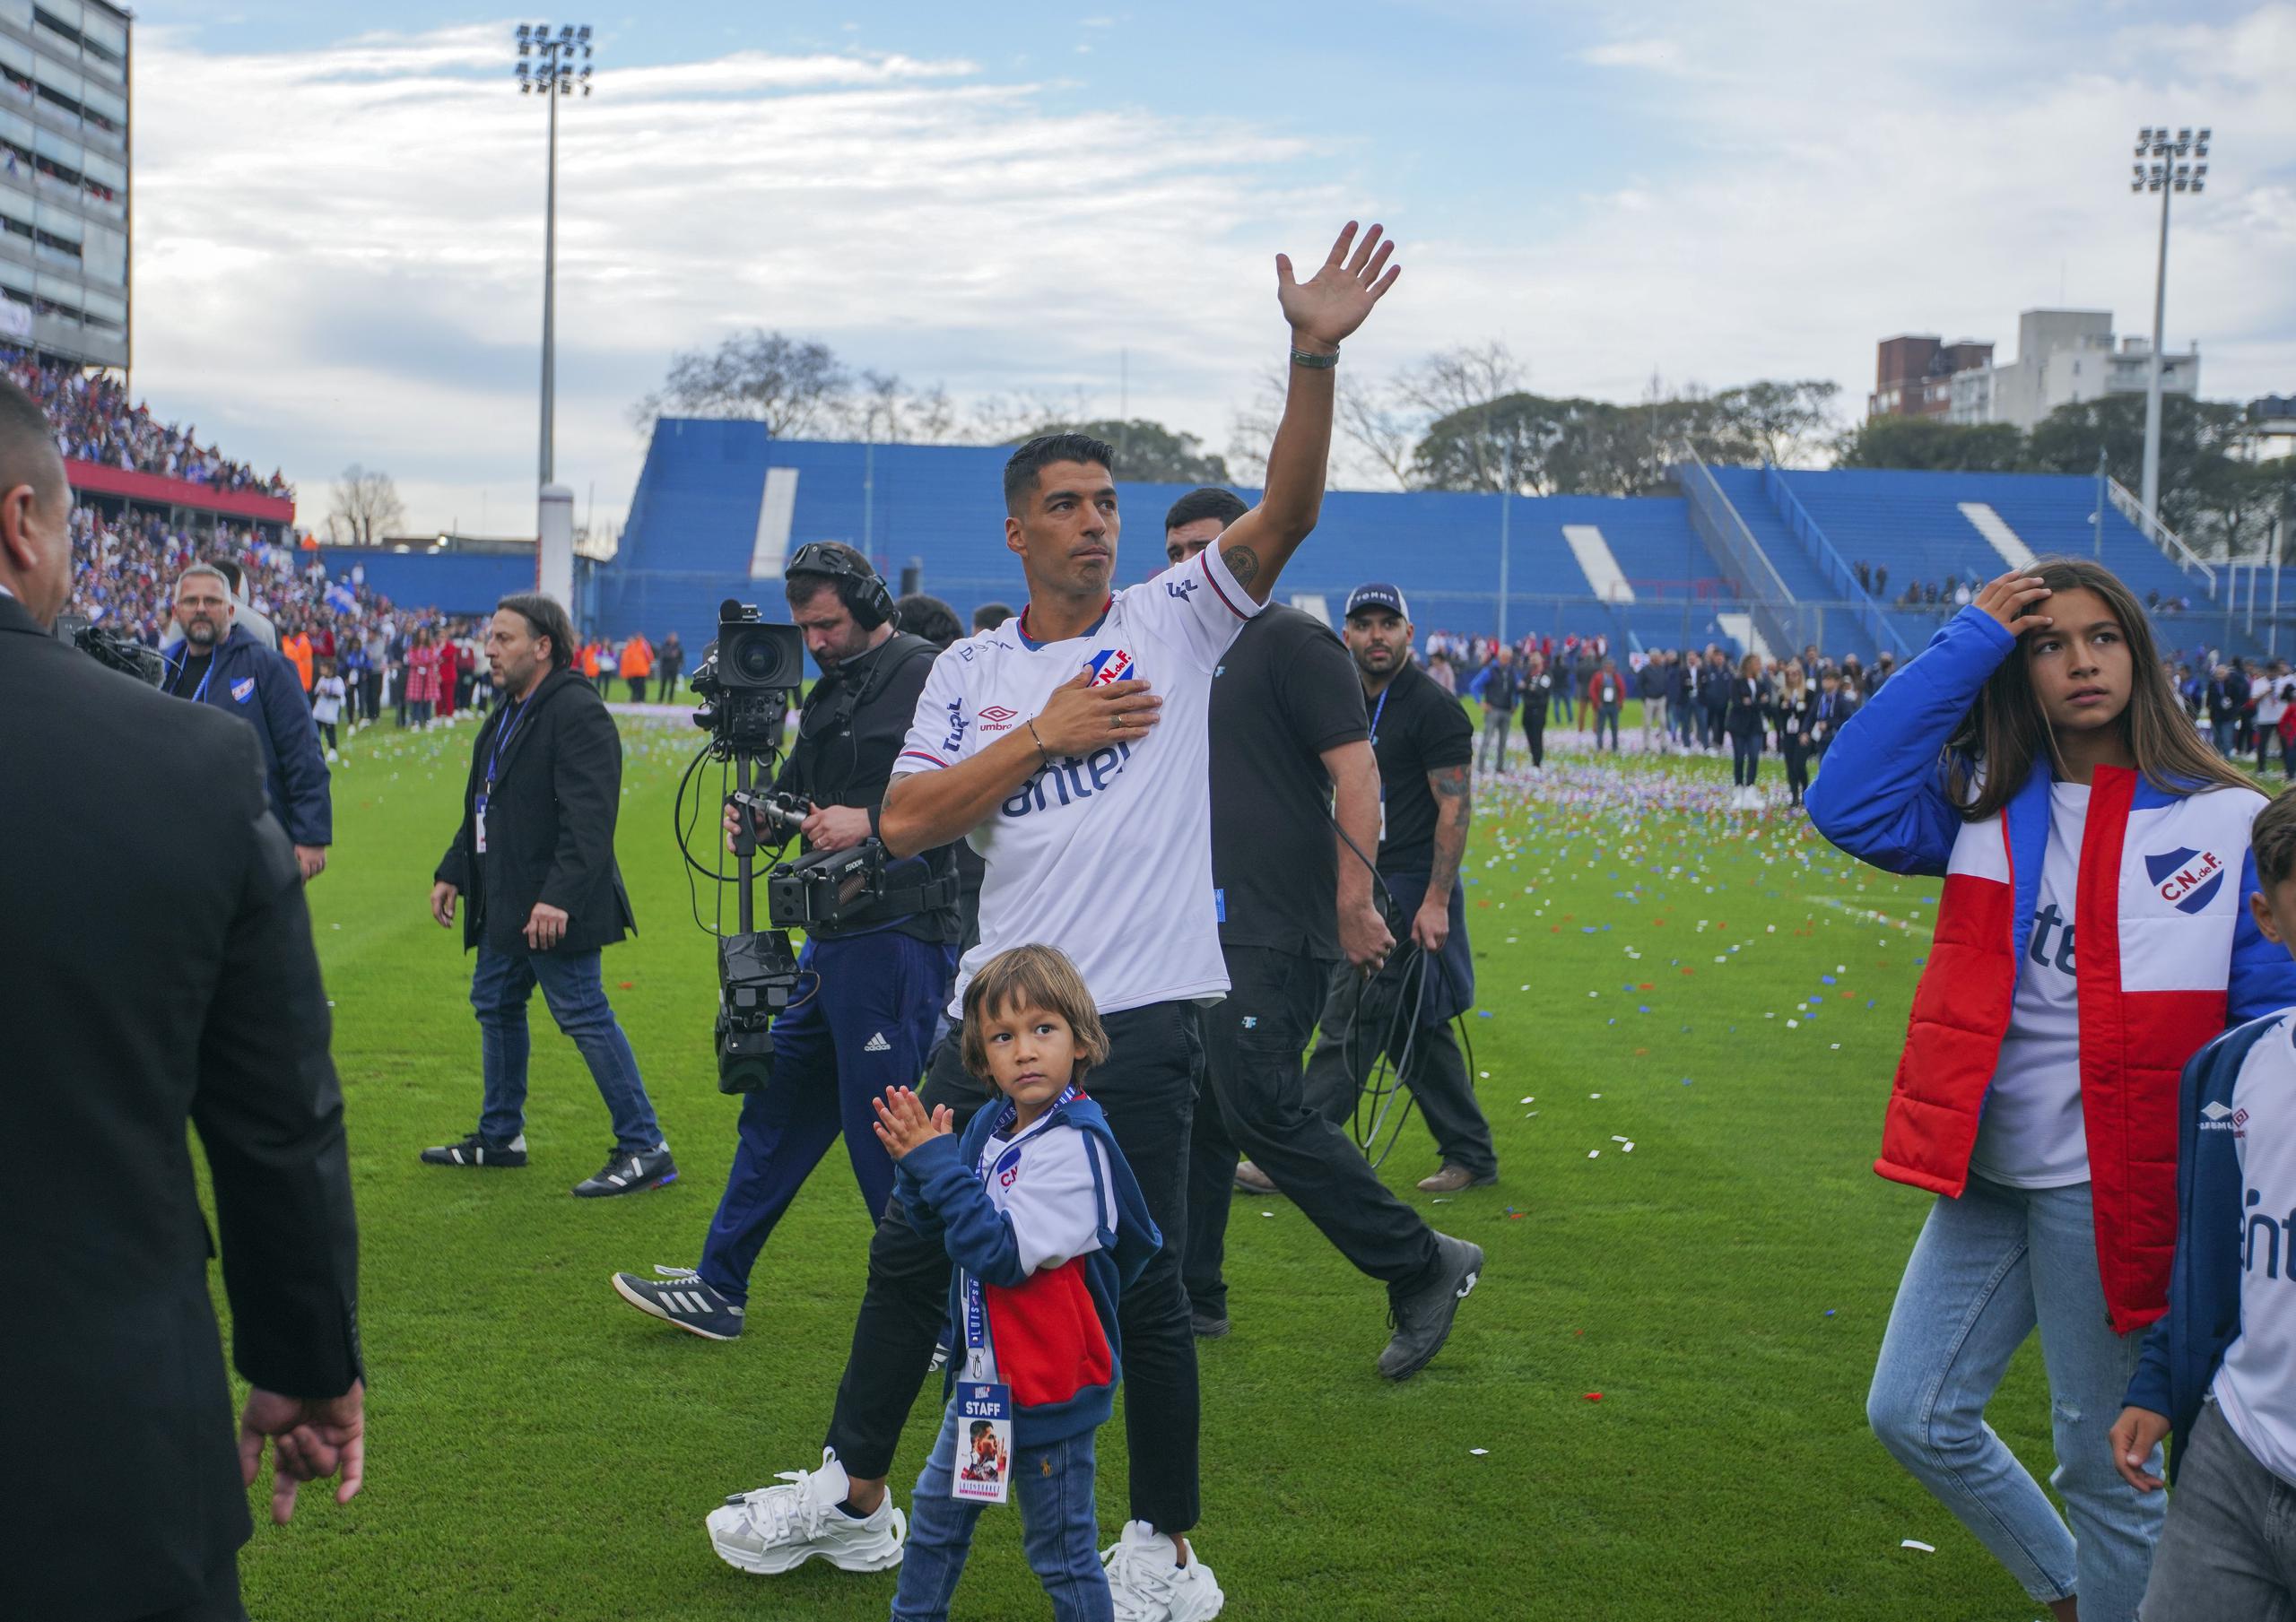 Acompañado por su familia, el astro uruguayo Luis Suárez saluda al público tras llegar al Gran Parque Central, el estadio de Nacional de Montevideo, el domingo 31 de julio de 2022. (AP Foto/Matilde Campodónico)